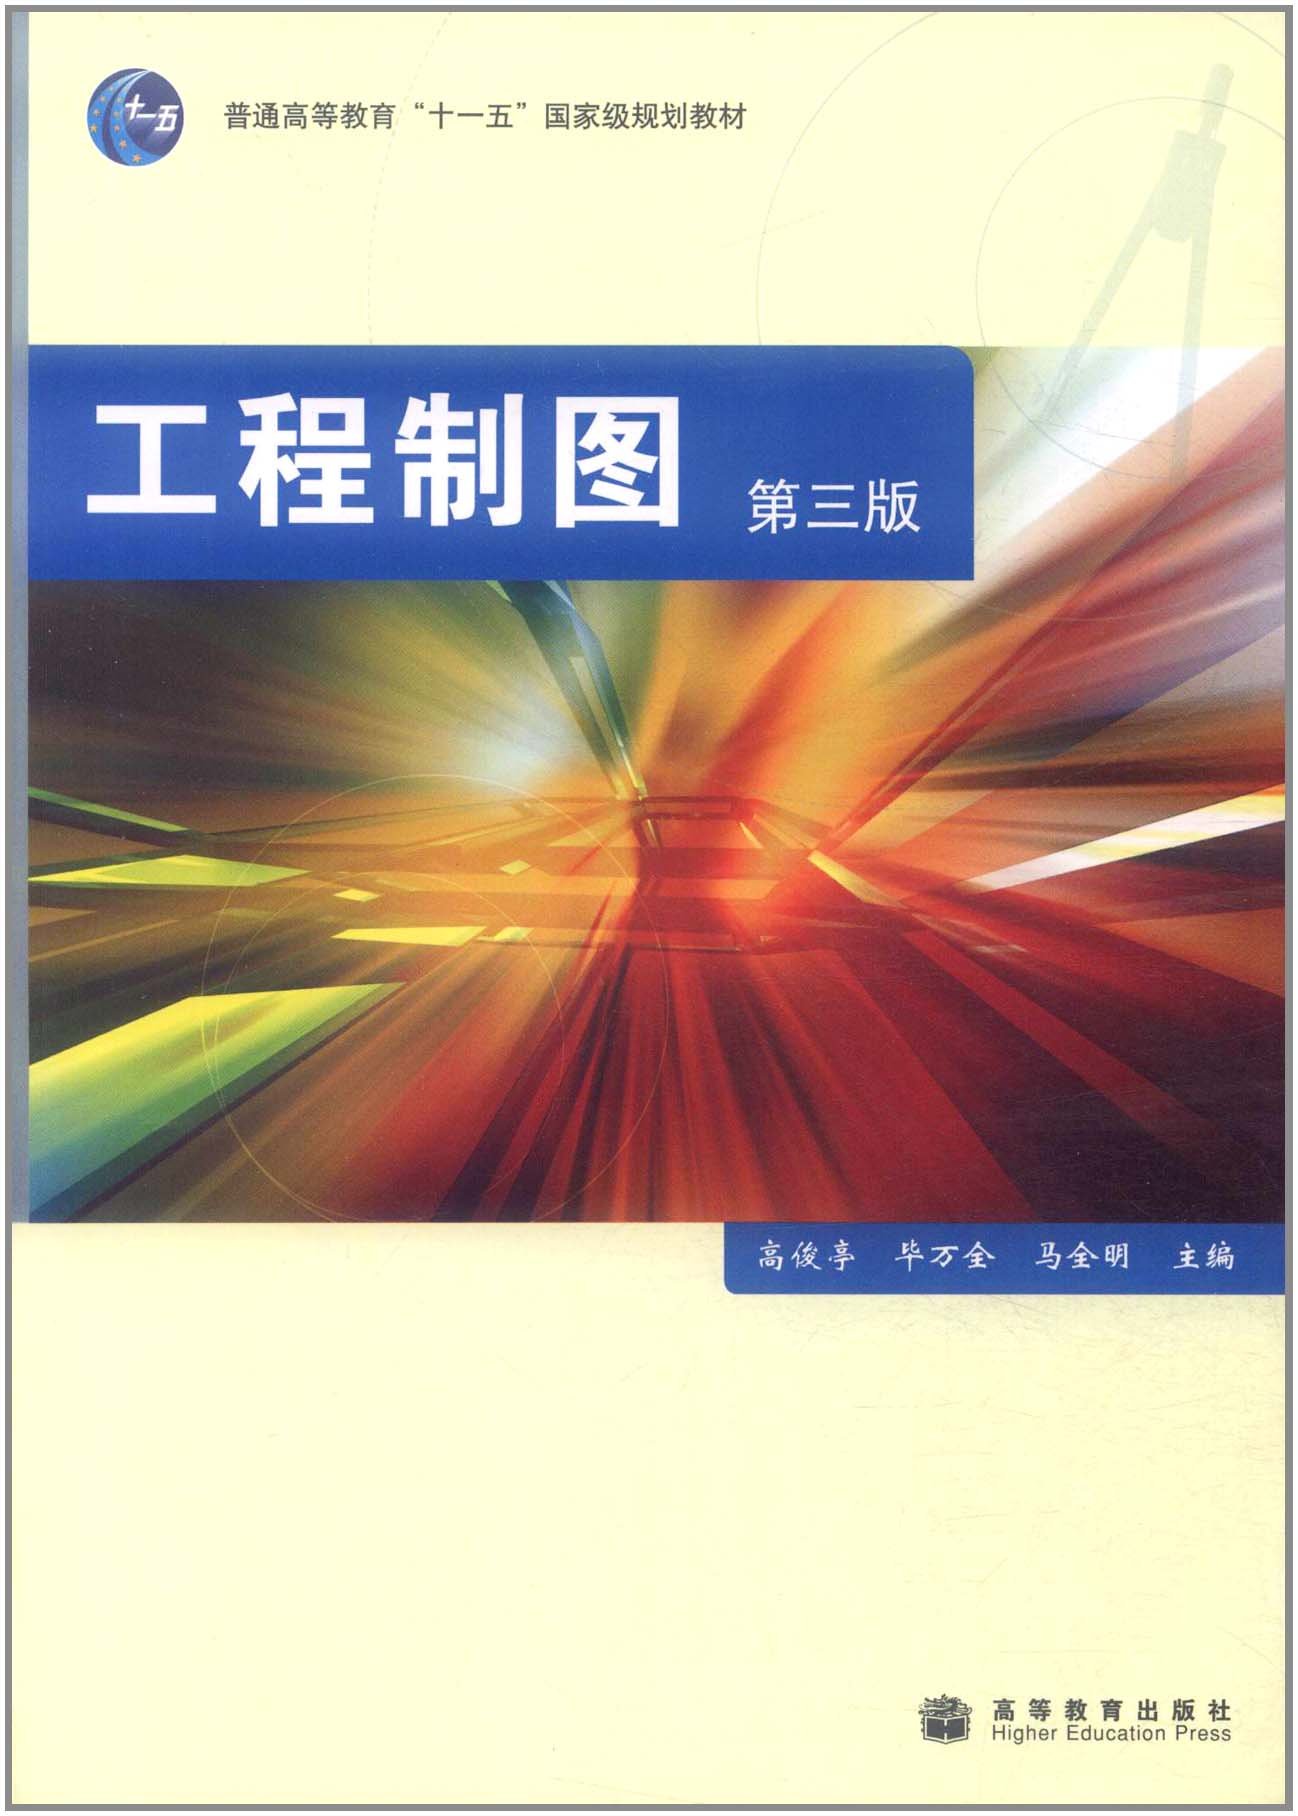 工程製圖（第三版）(2008年高等教育出版社出版的圖書)